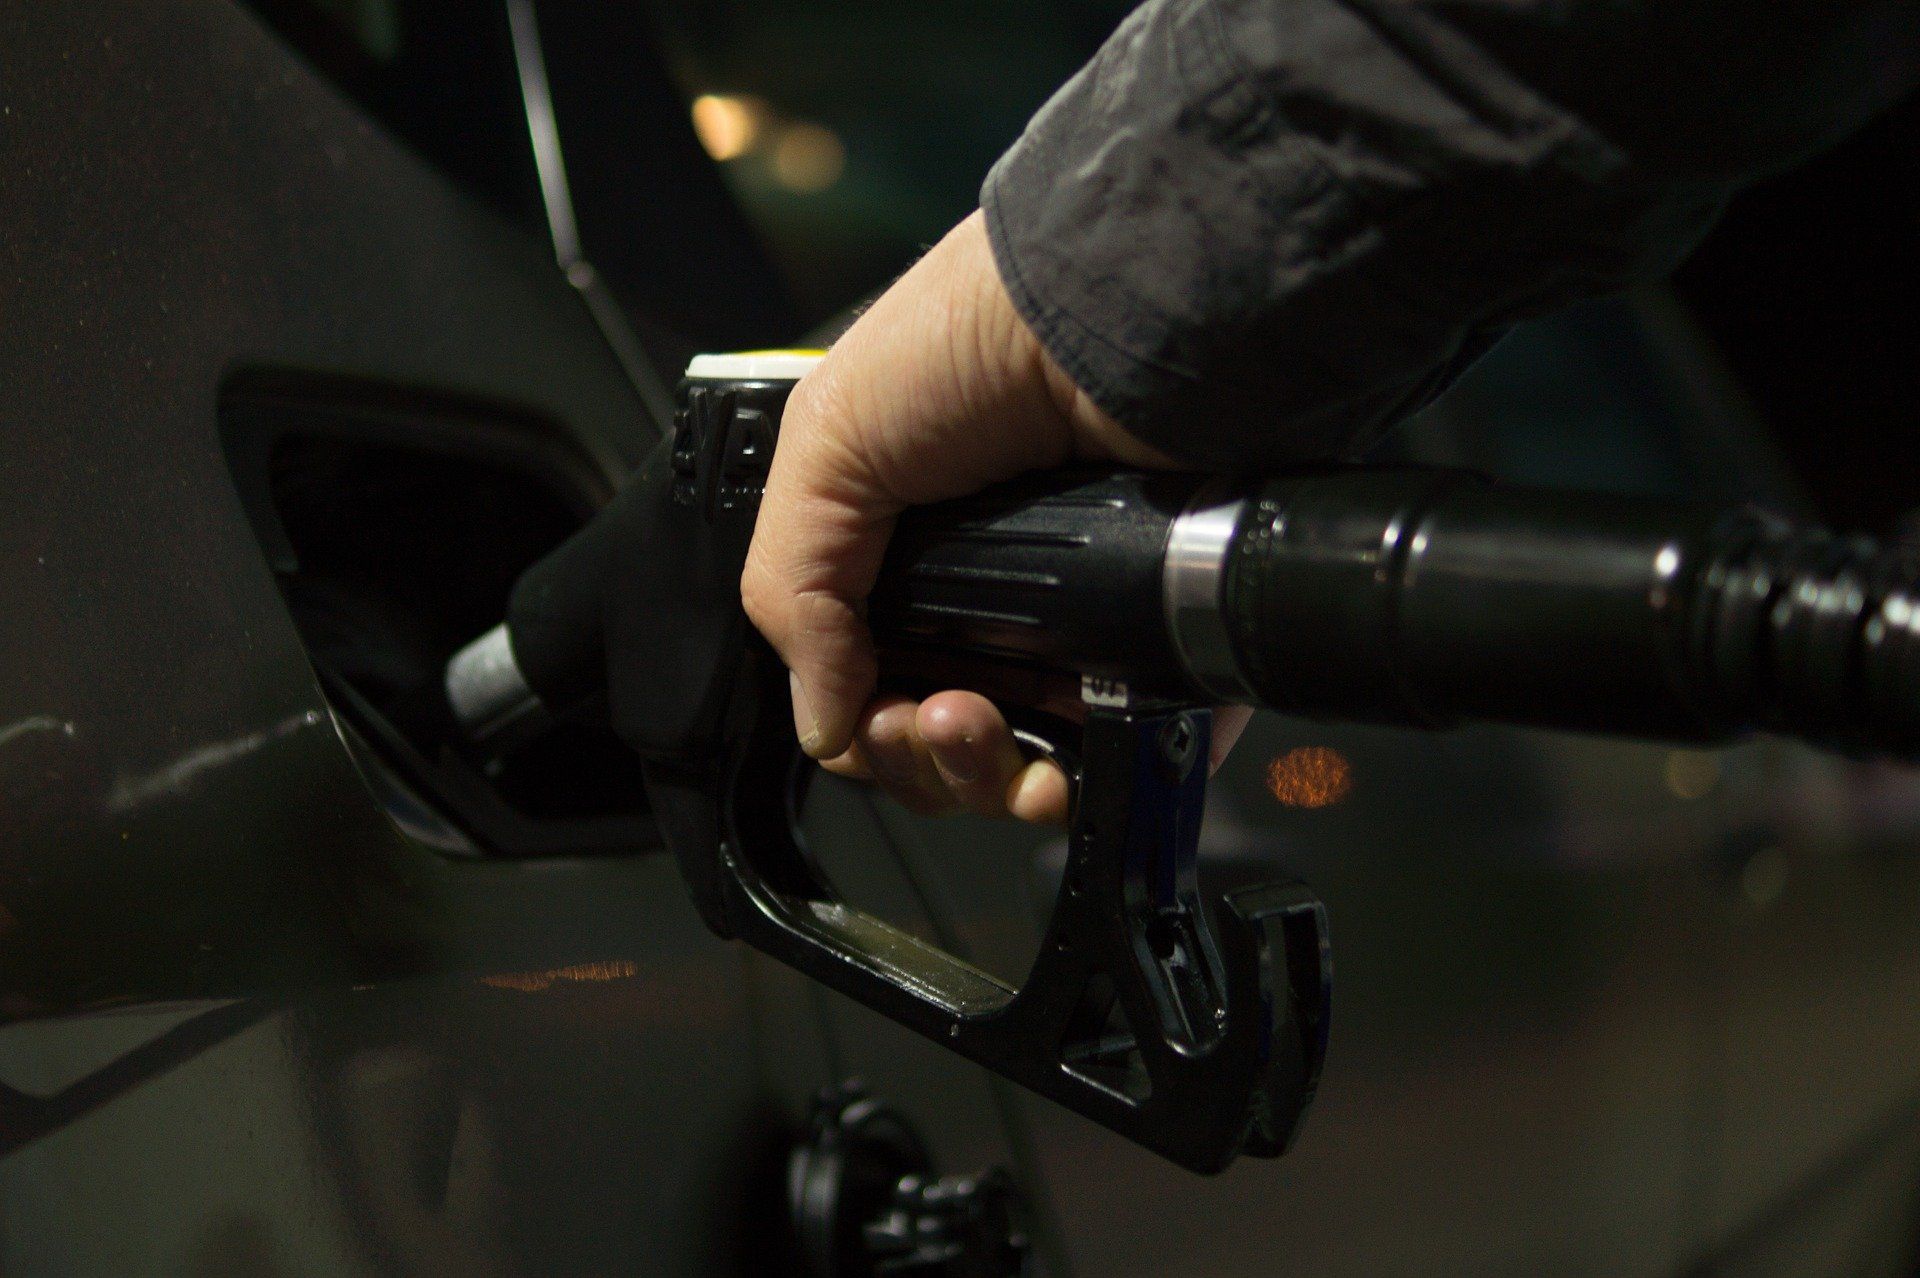 Fuel price July 4, 2022: Petrol Rs 96.72, diesel Rs 89.62 in Delhi